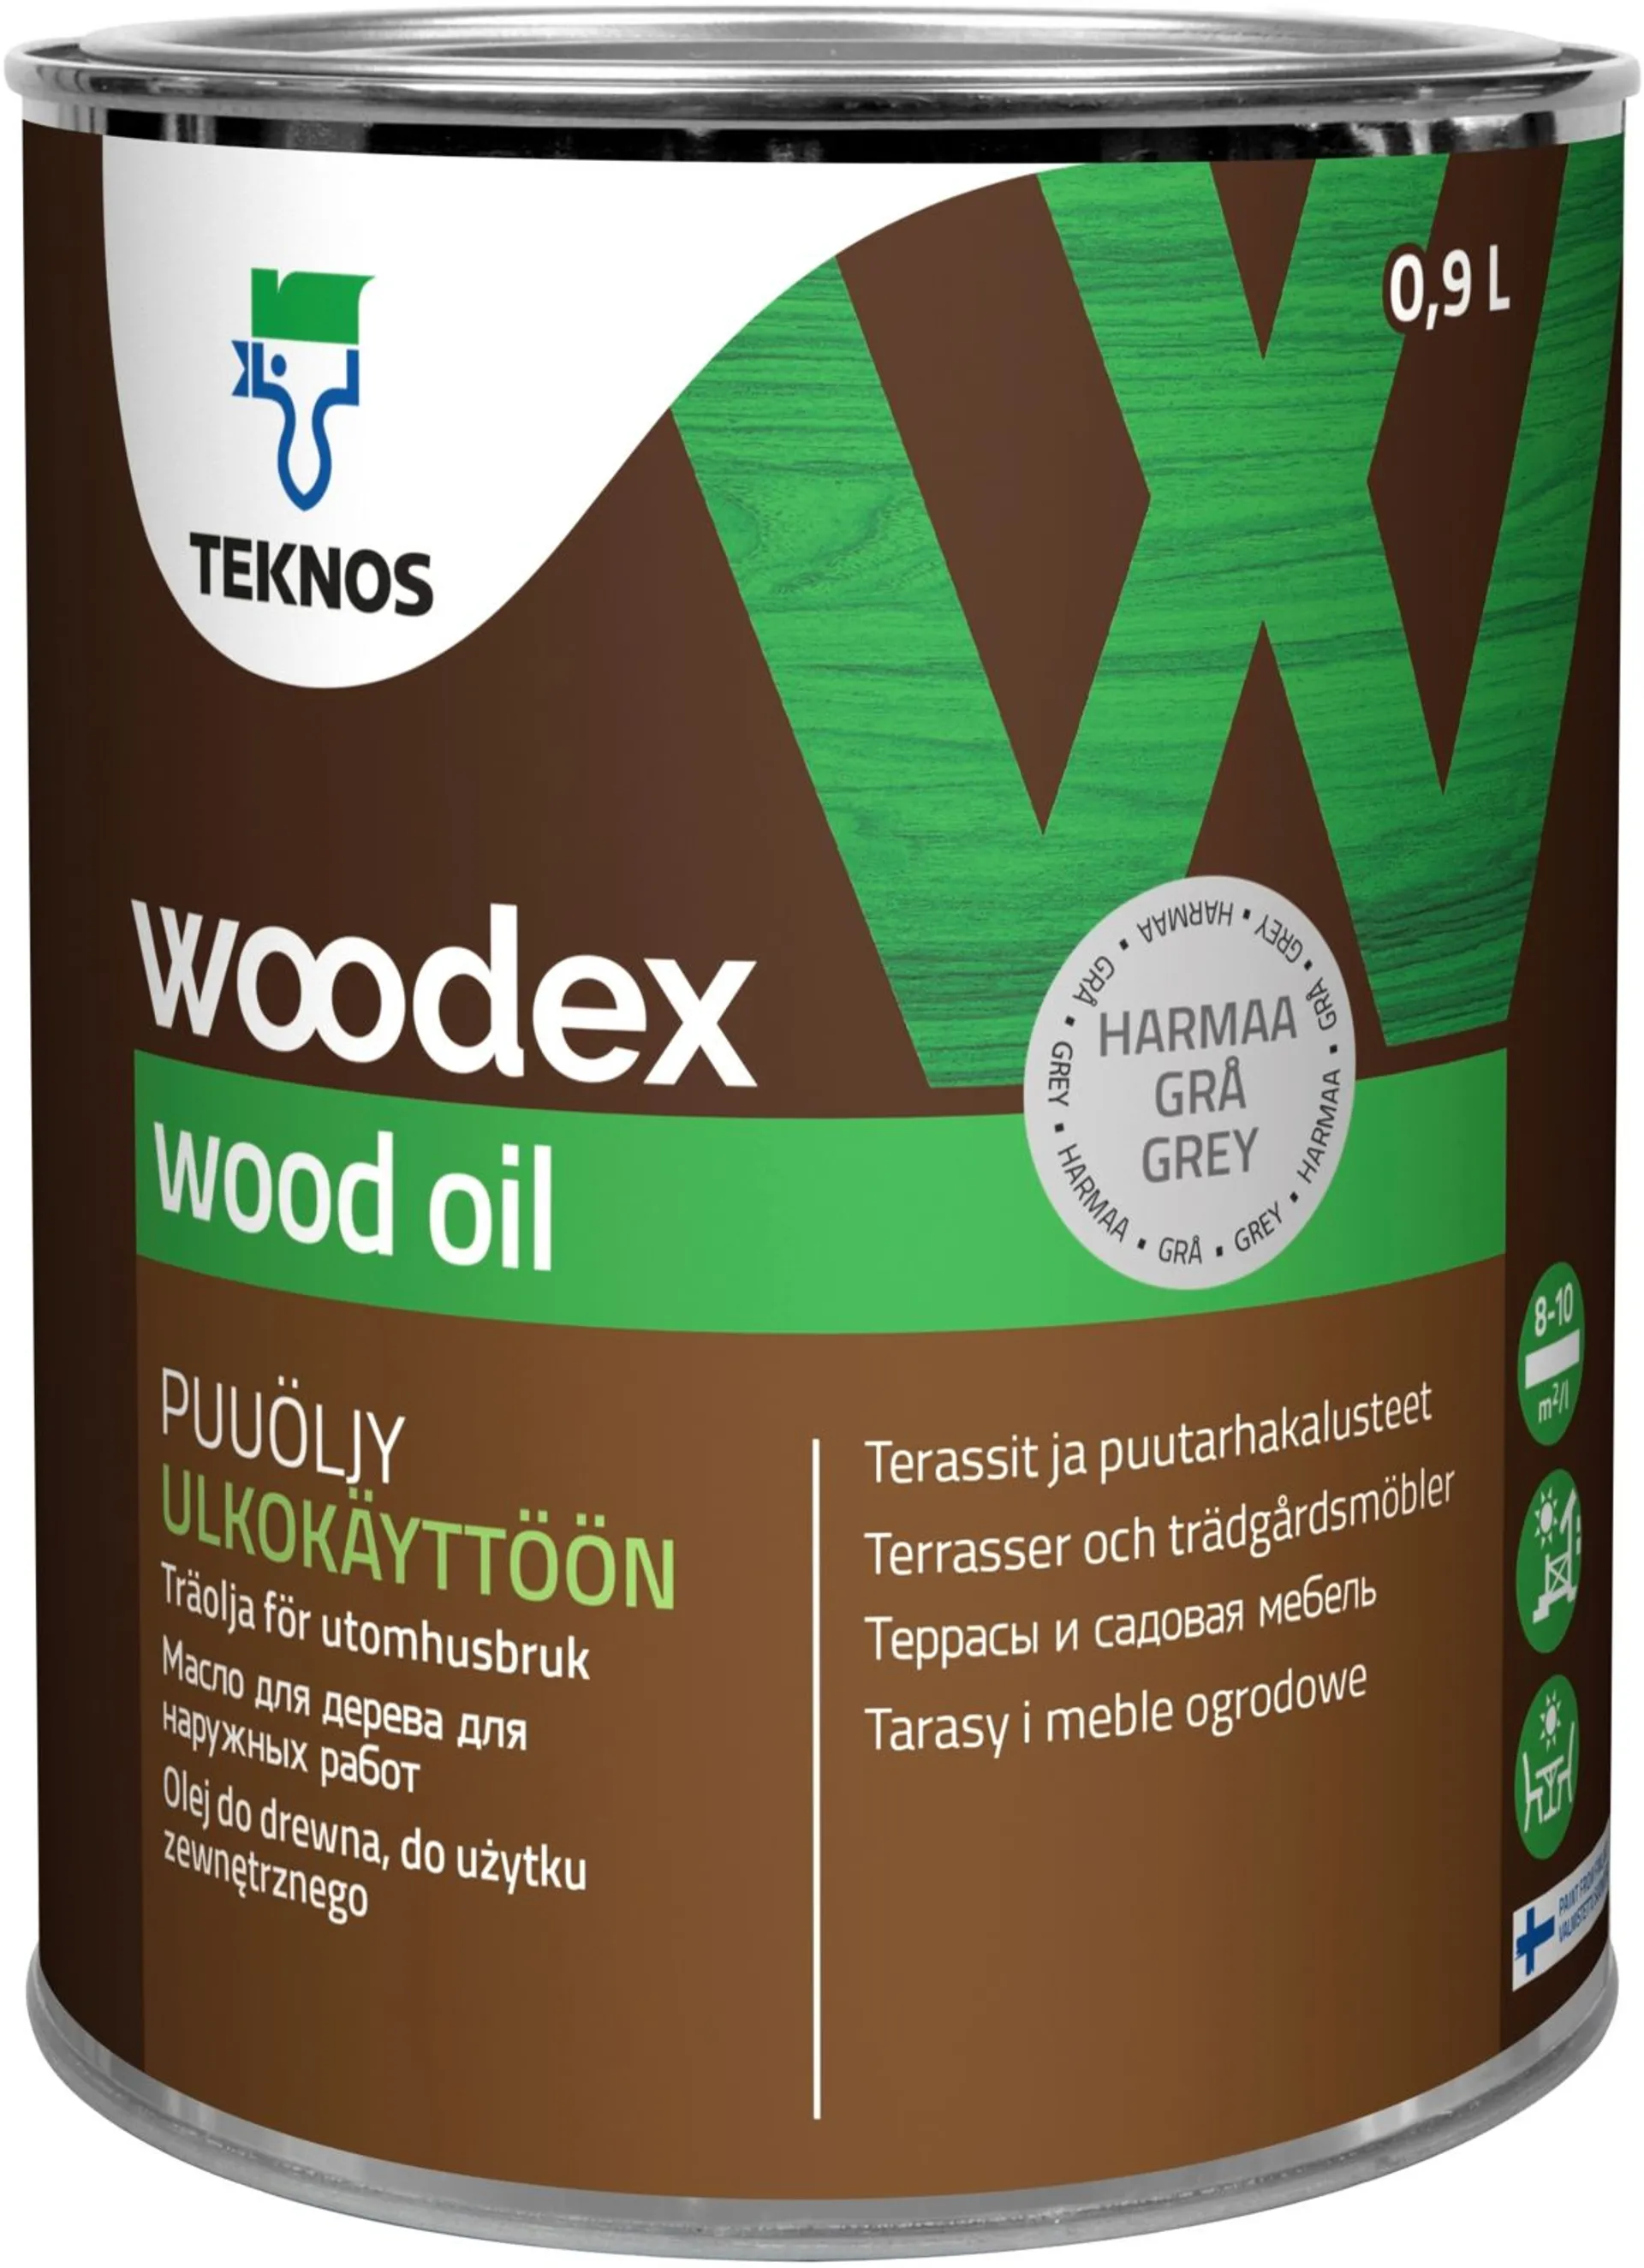 Teknos puuöljy Woodex Wood Oil  0,9 l harmaa